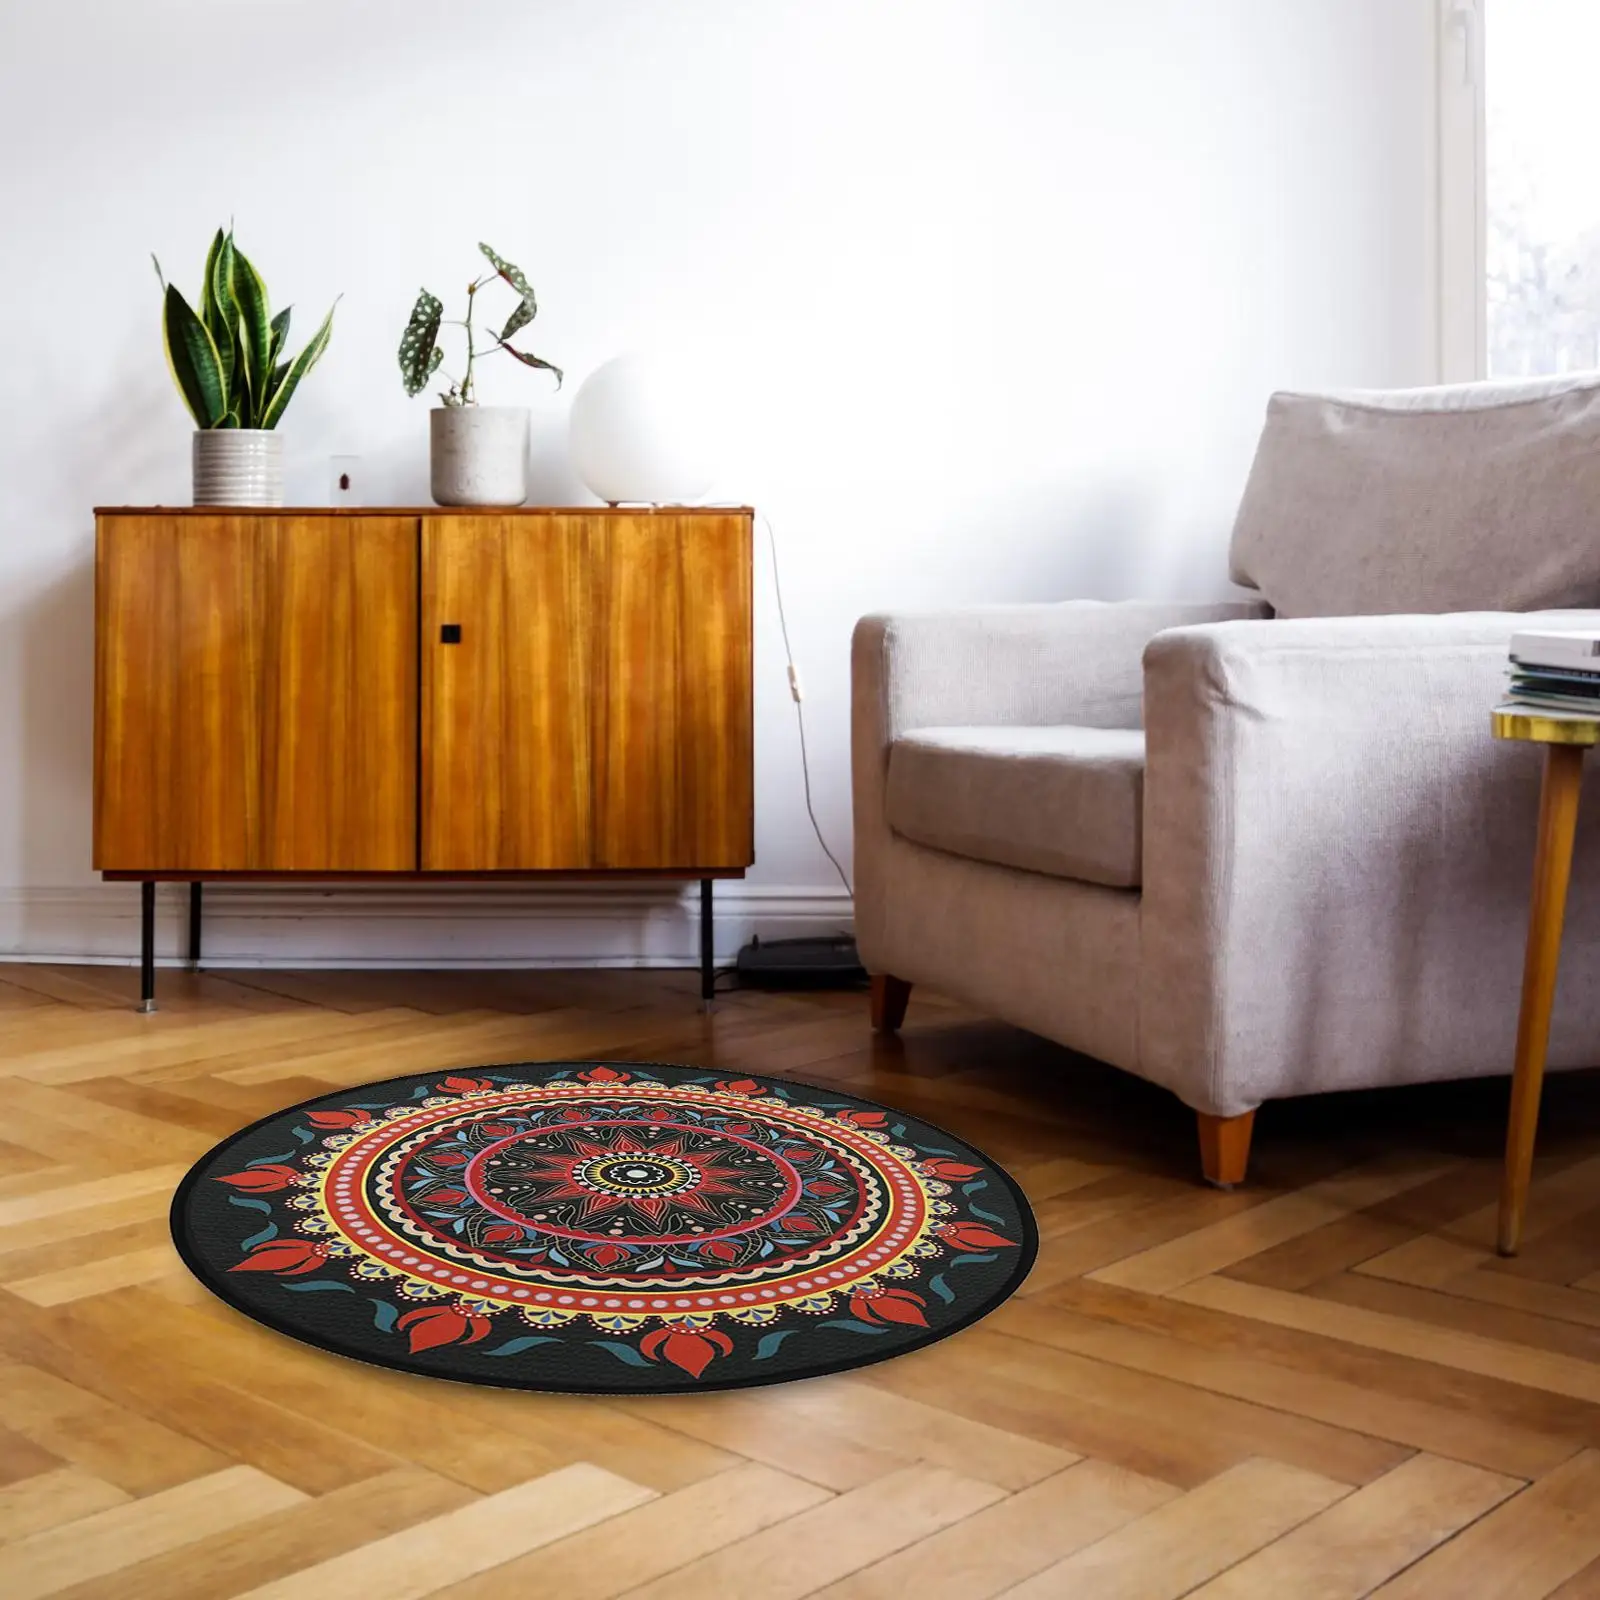 Round yoga floor mat with mandala pattern, meditation mat, washable